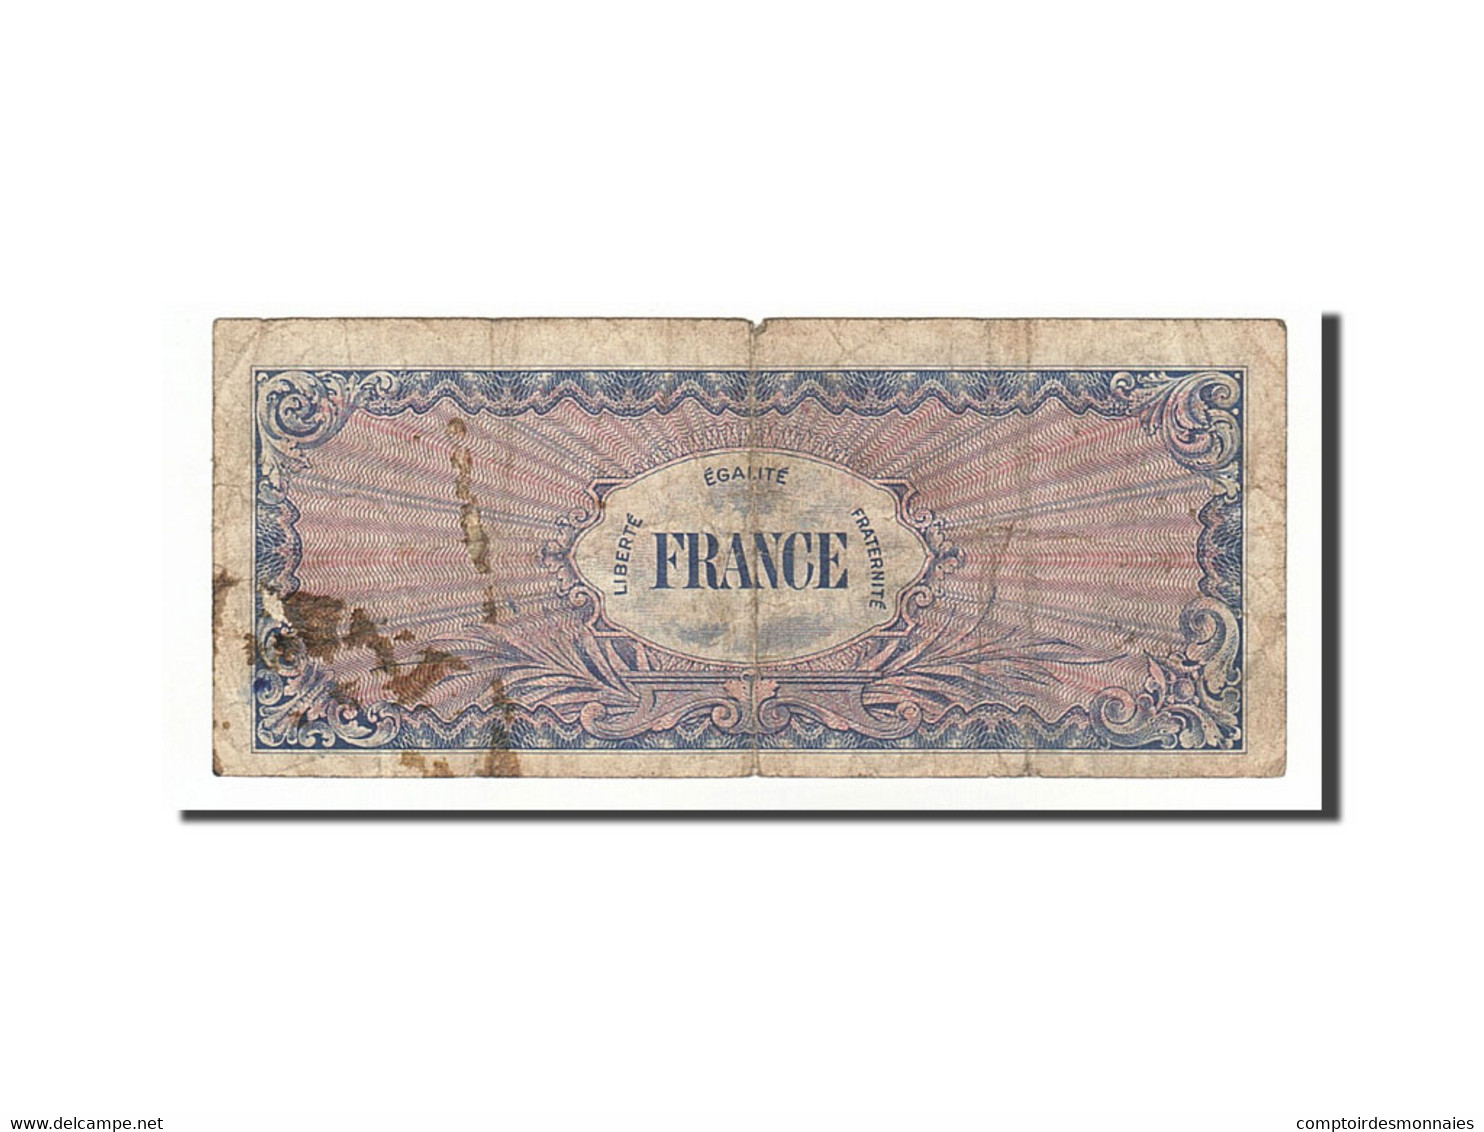 Billet, France, 50 Francs, 1945 Verso France, 1945, 1945-06-04, TB - 1945 Verso Frankreich